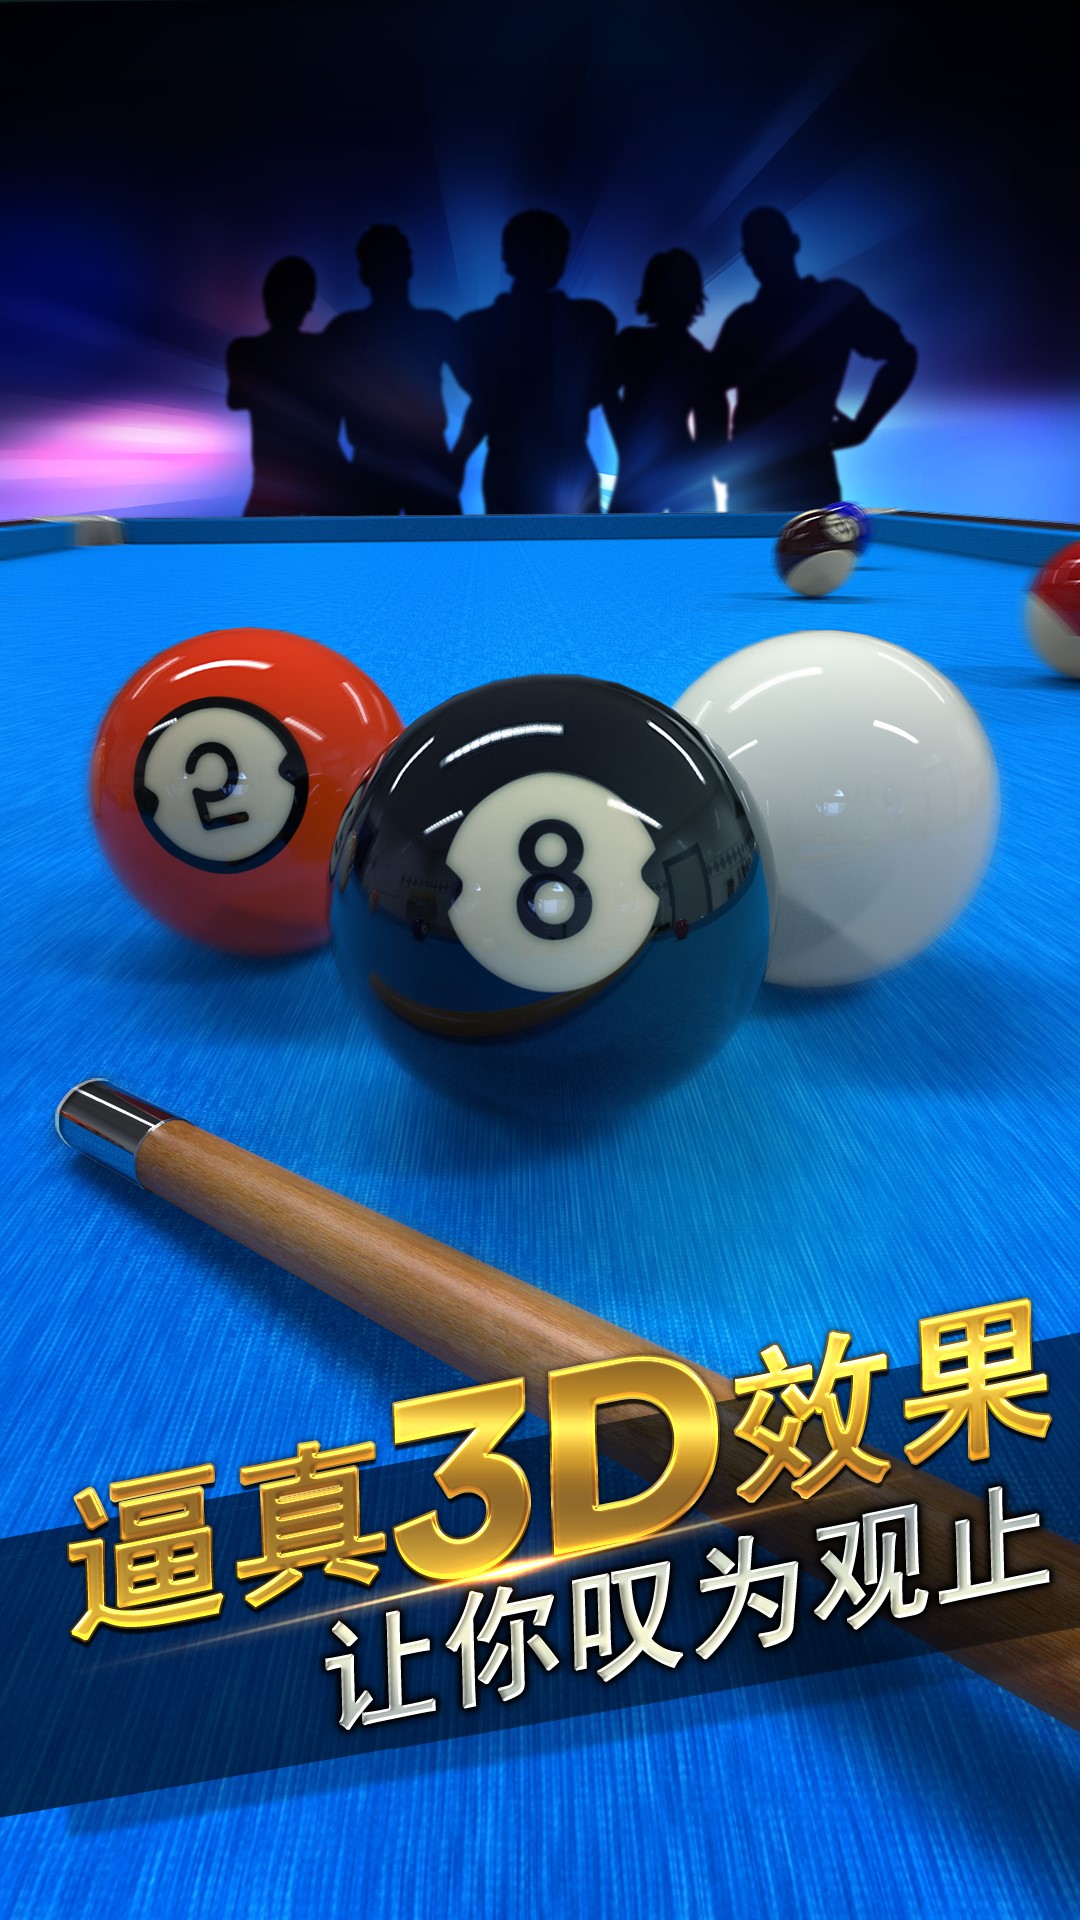 台球风云-8球9球斯诺克 v1.4.6.407.403.0305-一款线上双人3D台球游戏